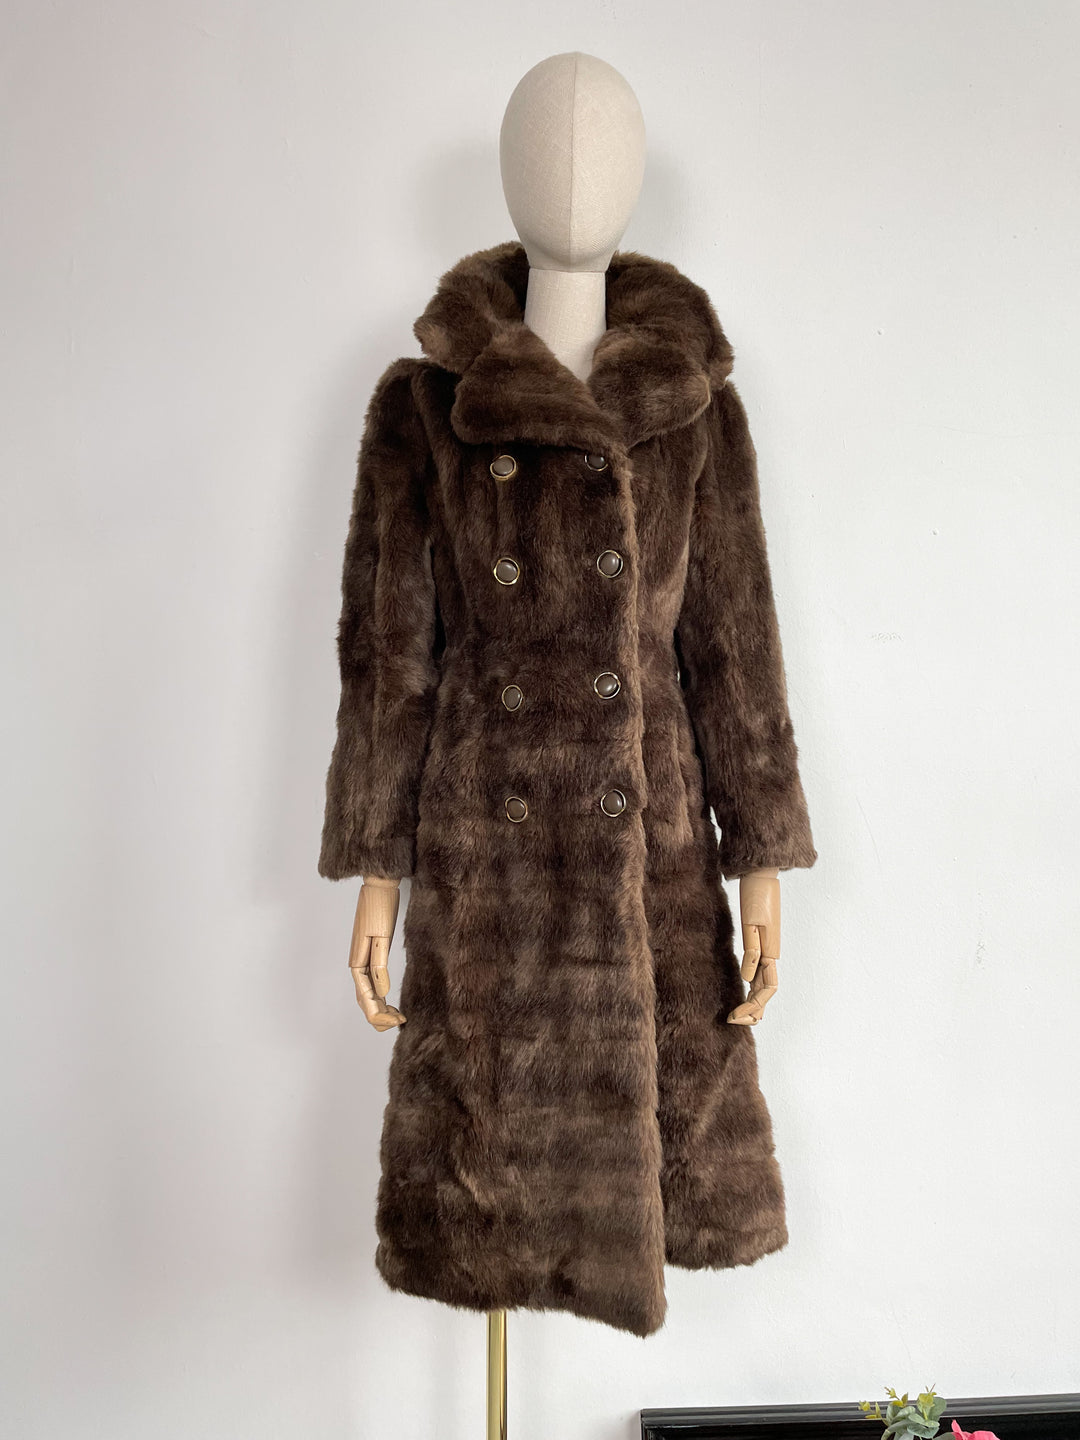 The Le Chic 1970s Faux Fur Coat